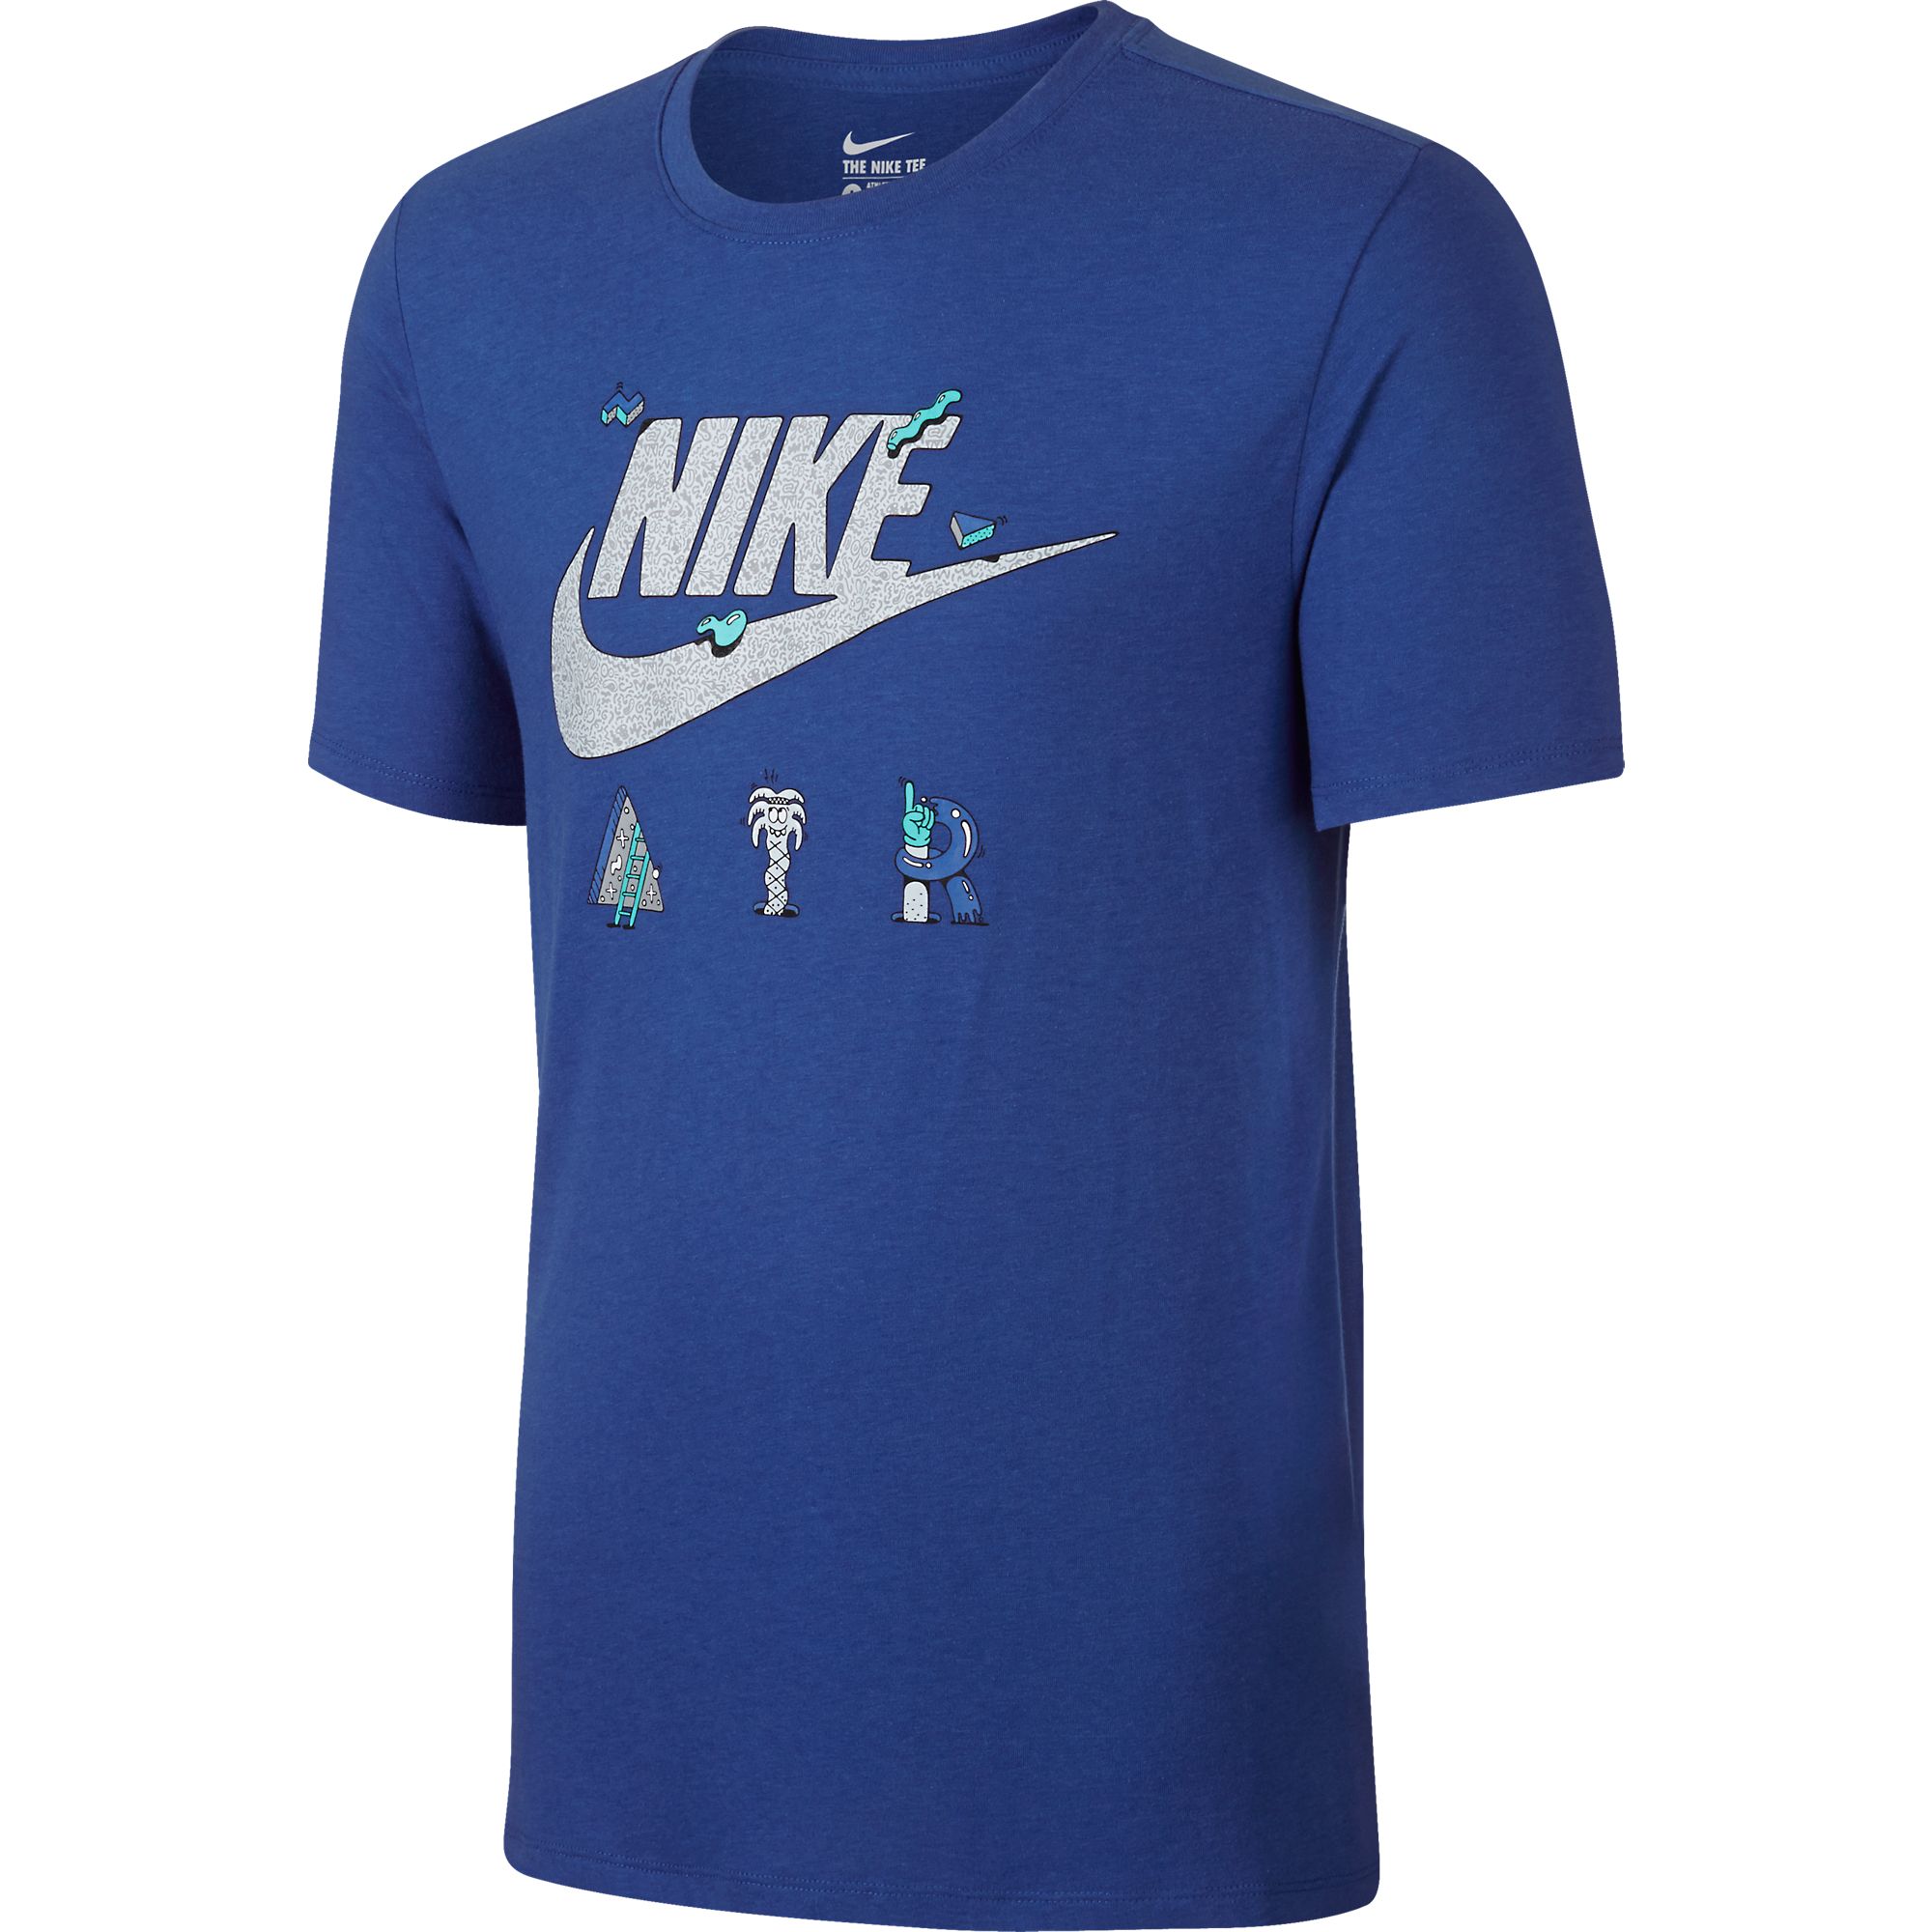 Nike Air Print Men's T-Shirt Royal Blue 779838-480 | eBay